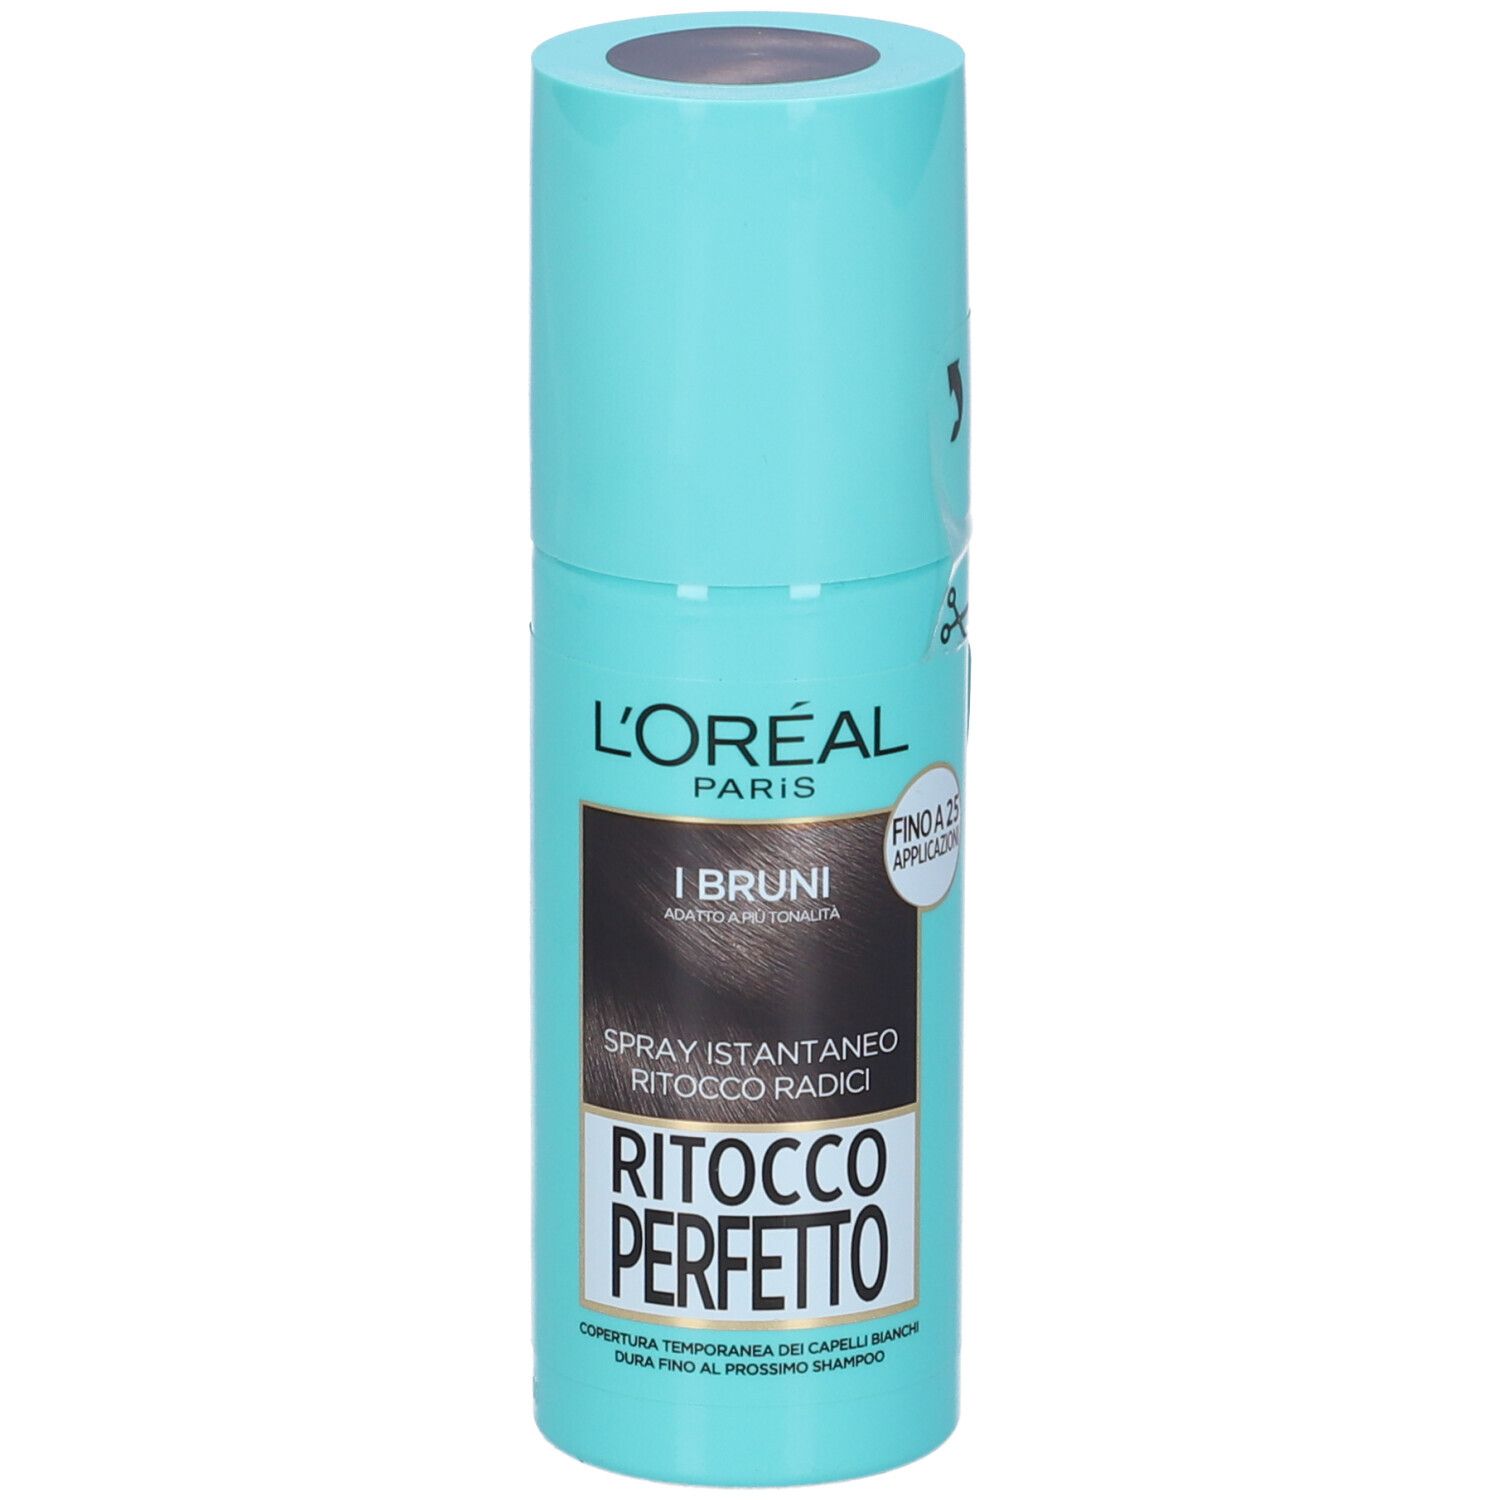 L'Oréal Paris Ritocco Perfetto, Spray Istantaneo Correttore per Radici e Capelli Bianchi, Colore: Bruno, 75 ml